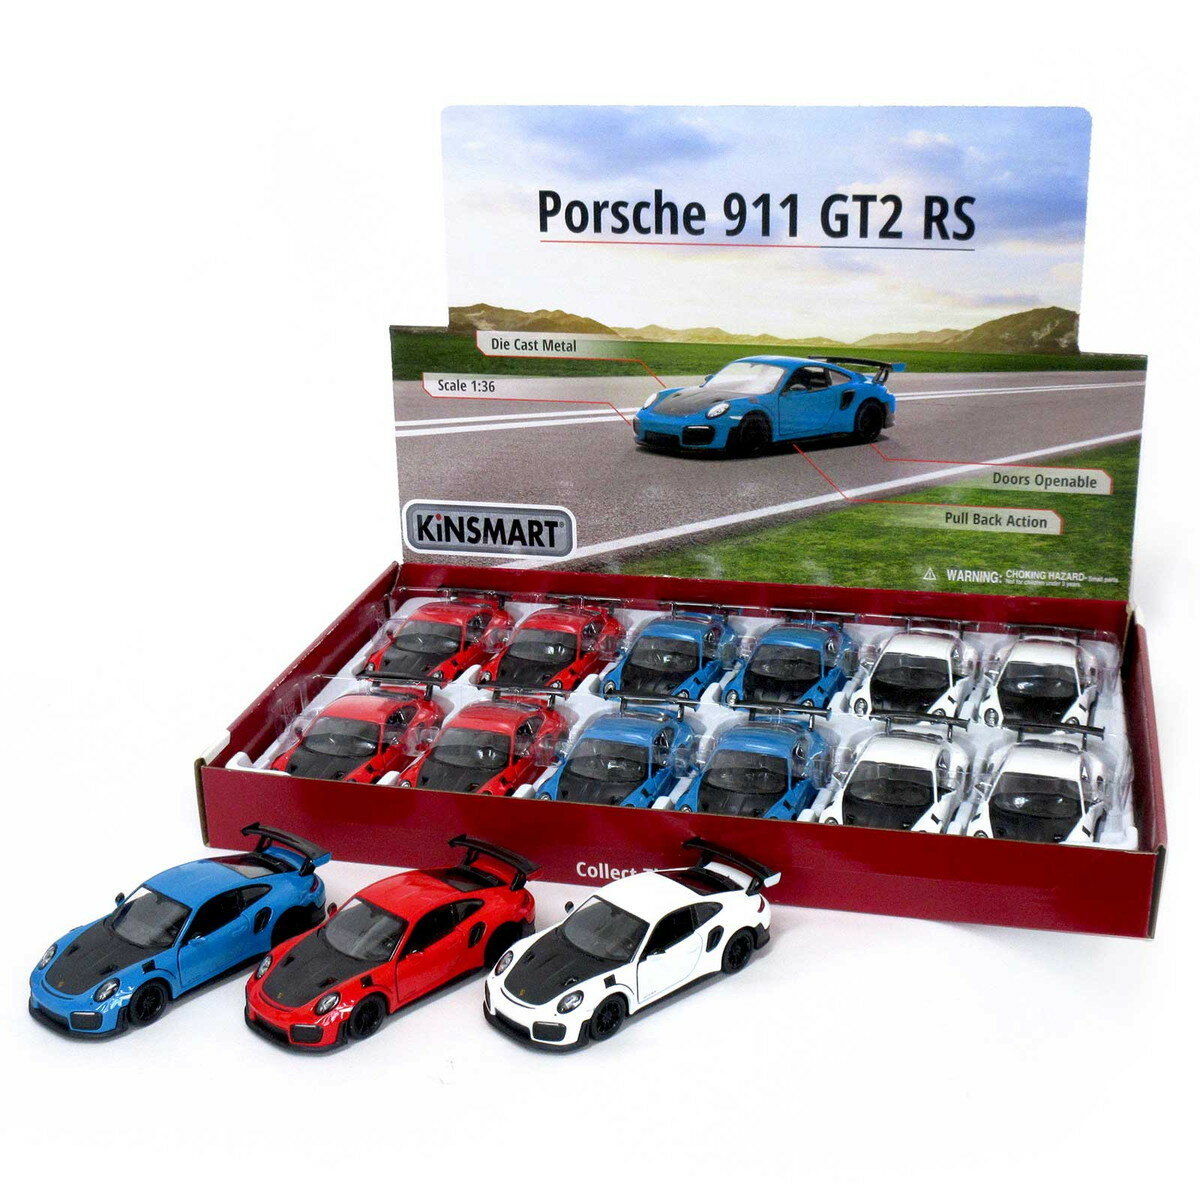 ●本体サイズ：5.5×3.8×12.5cm●ディスプレイボックスサイズ：40.5×4.5×28.0cm●重量：1333g●パッケージタイプ：ディスプレイボックス付き●製品素材：ダイキャスト●生産地：中国●注意書き：モニター発色の具合により、実物とは色合いが異なる場合がございます。ポルシェ 911 GT2 RS(Porsche 911 GT2 RS)を忠実に再現したミニカーです。インテリア雑貨としても大変人気の高い逸品です☆※3色、各4個の12個セット・手前に引くと自動で前進する、プルバックカー！・ディスプレイボックス付き・ポルシェ(Porsche AG)公式ライセンス【Kintoy】(キントーイ)1993年に香港で設立した大手カー玩具メーカー。 低価格帯でありながらディティールの細かさやプロポーションの良さから人気を博しております。メーカー希望小売価格はメーカーサイトに基づいて掲載しています